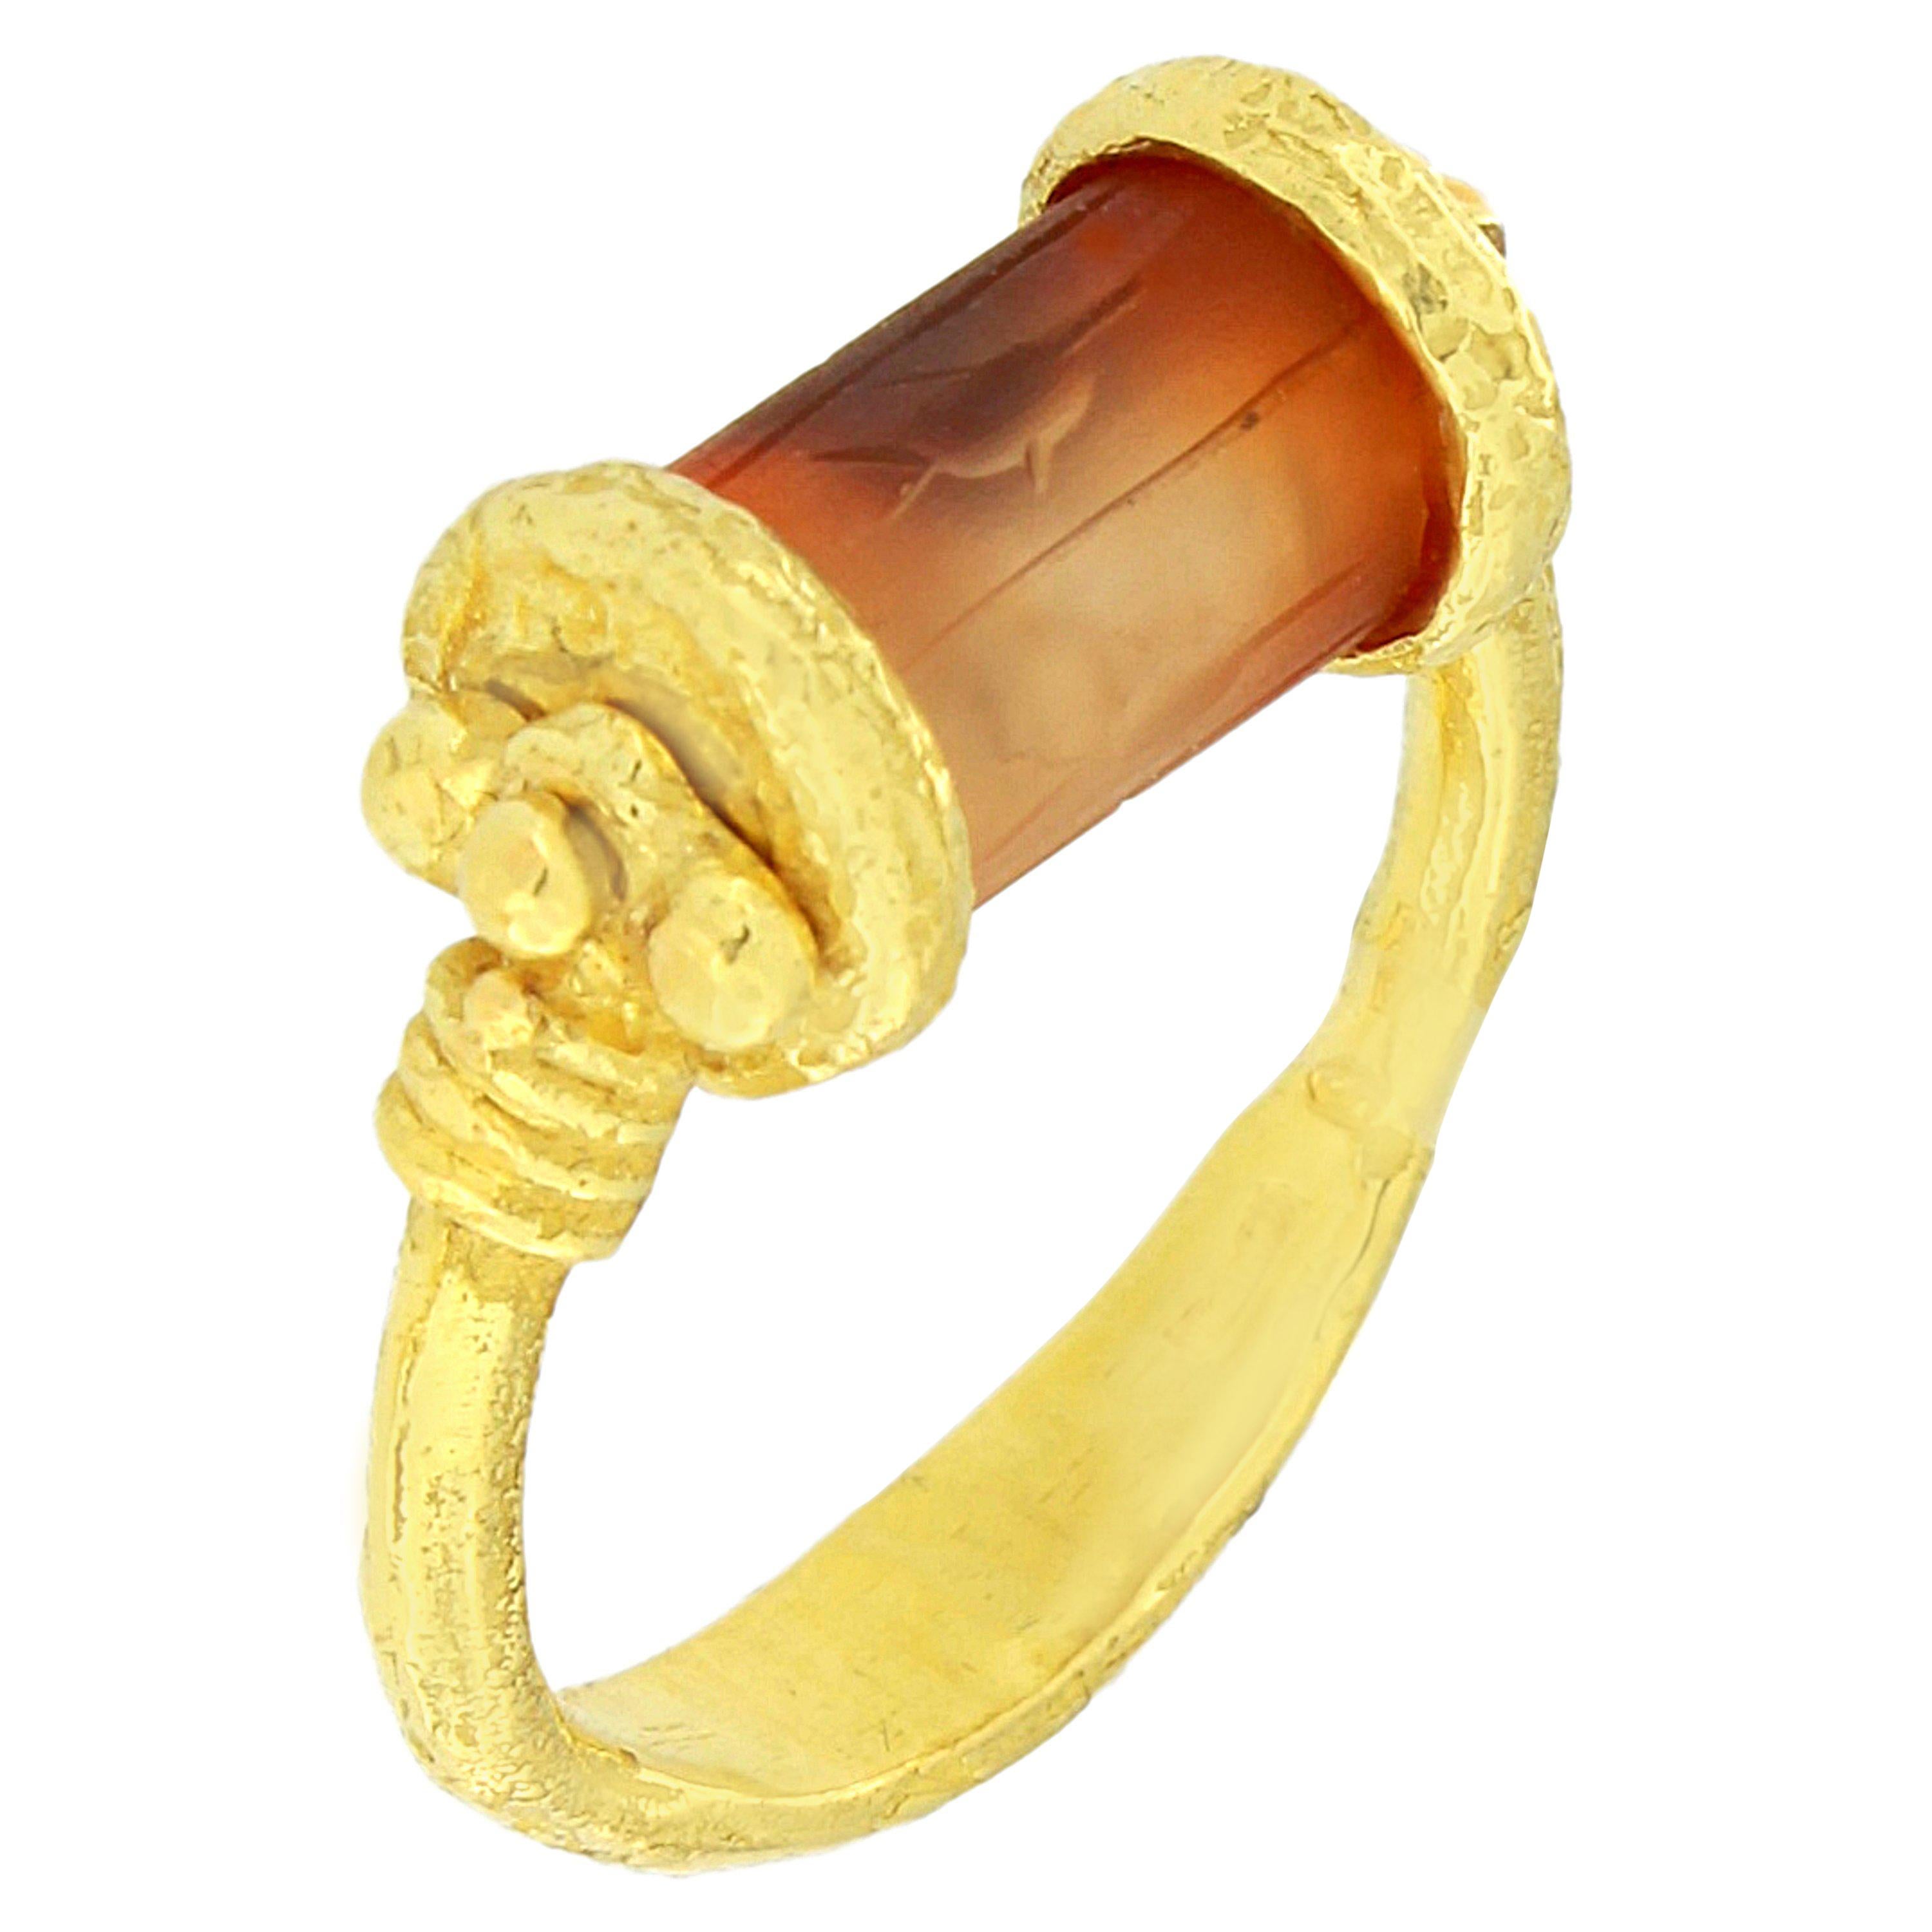 Sacchi Engraved Carnelian Cylinder Seal Ring 18 Karat Satin Yellow Gold